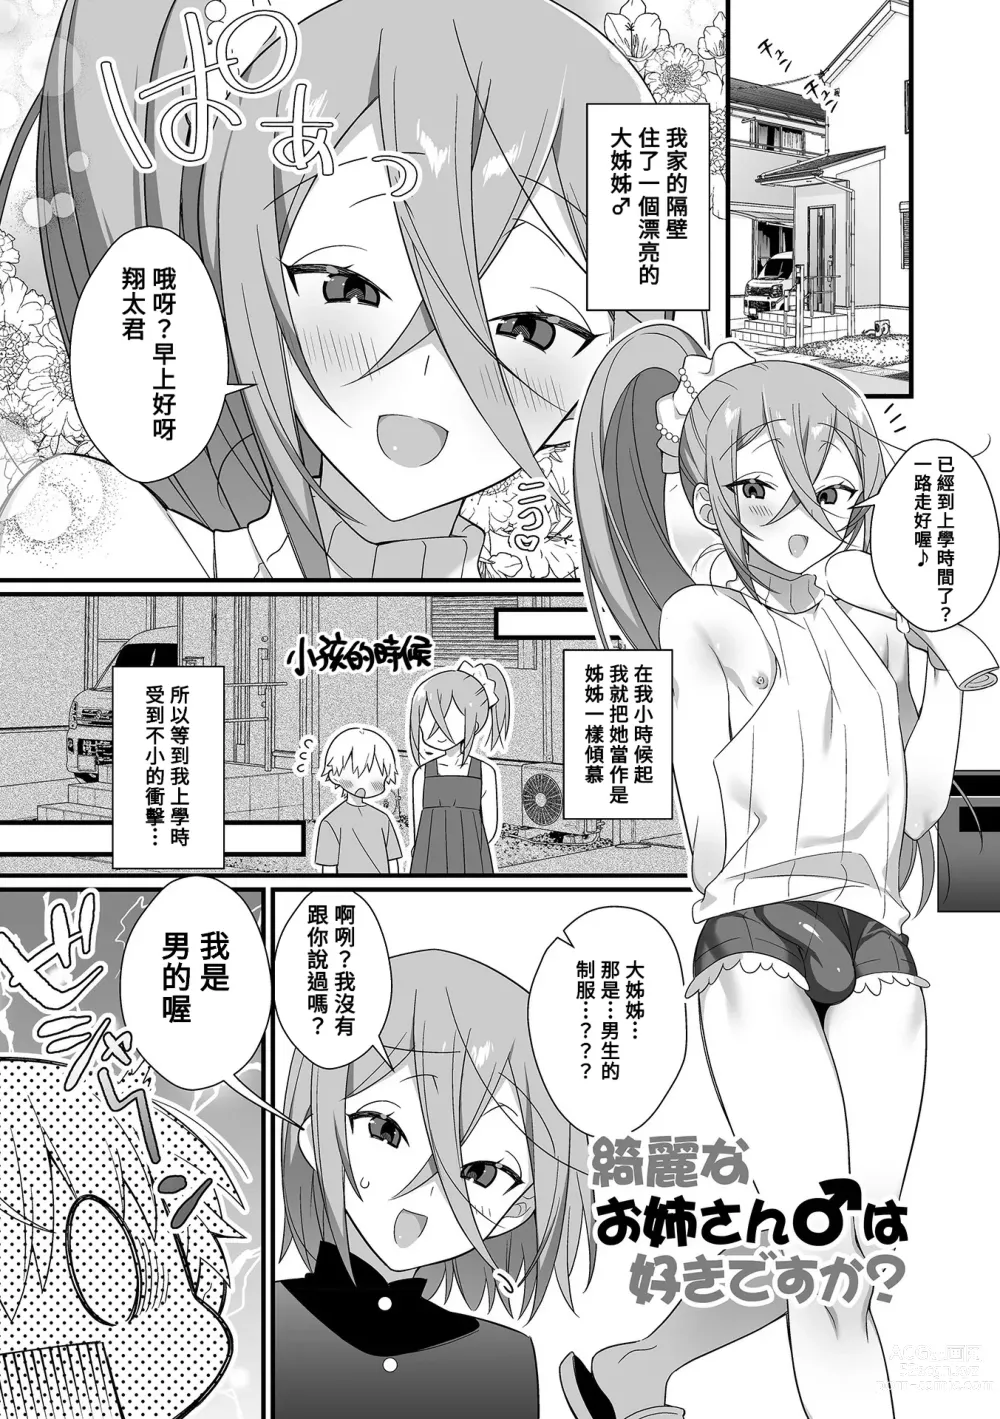 Page 1 of manga Kireina Onesan♂ wa Sukidesuka?